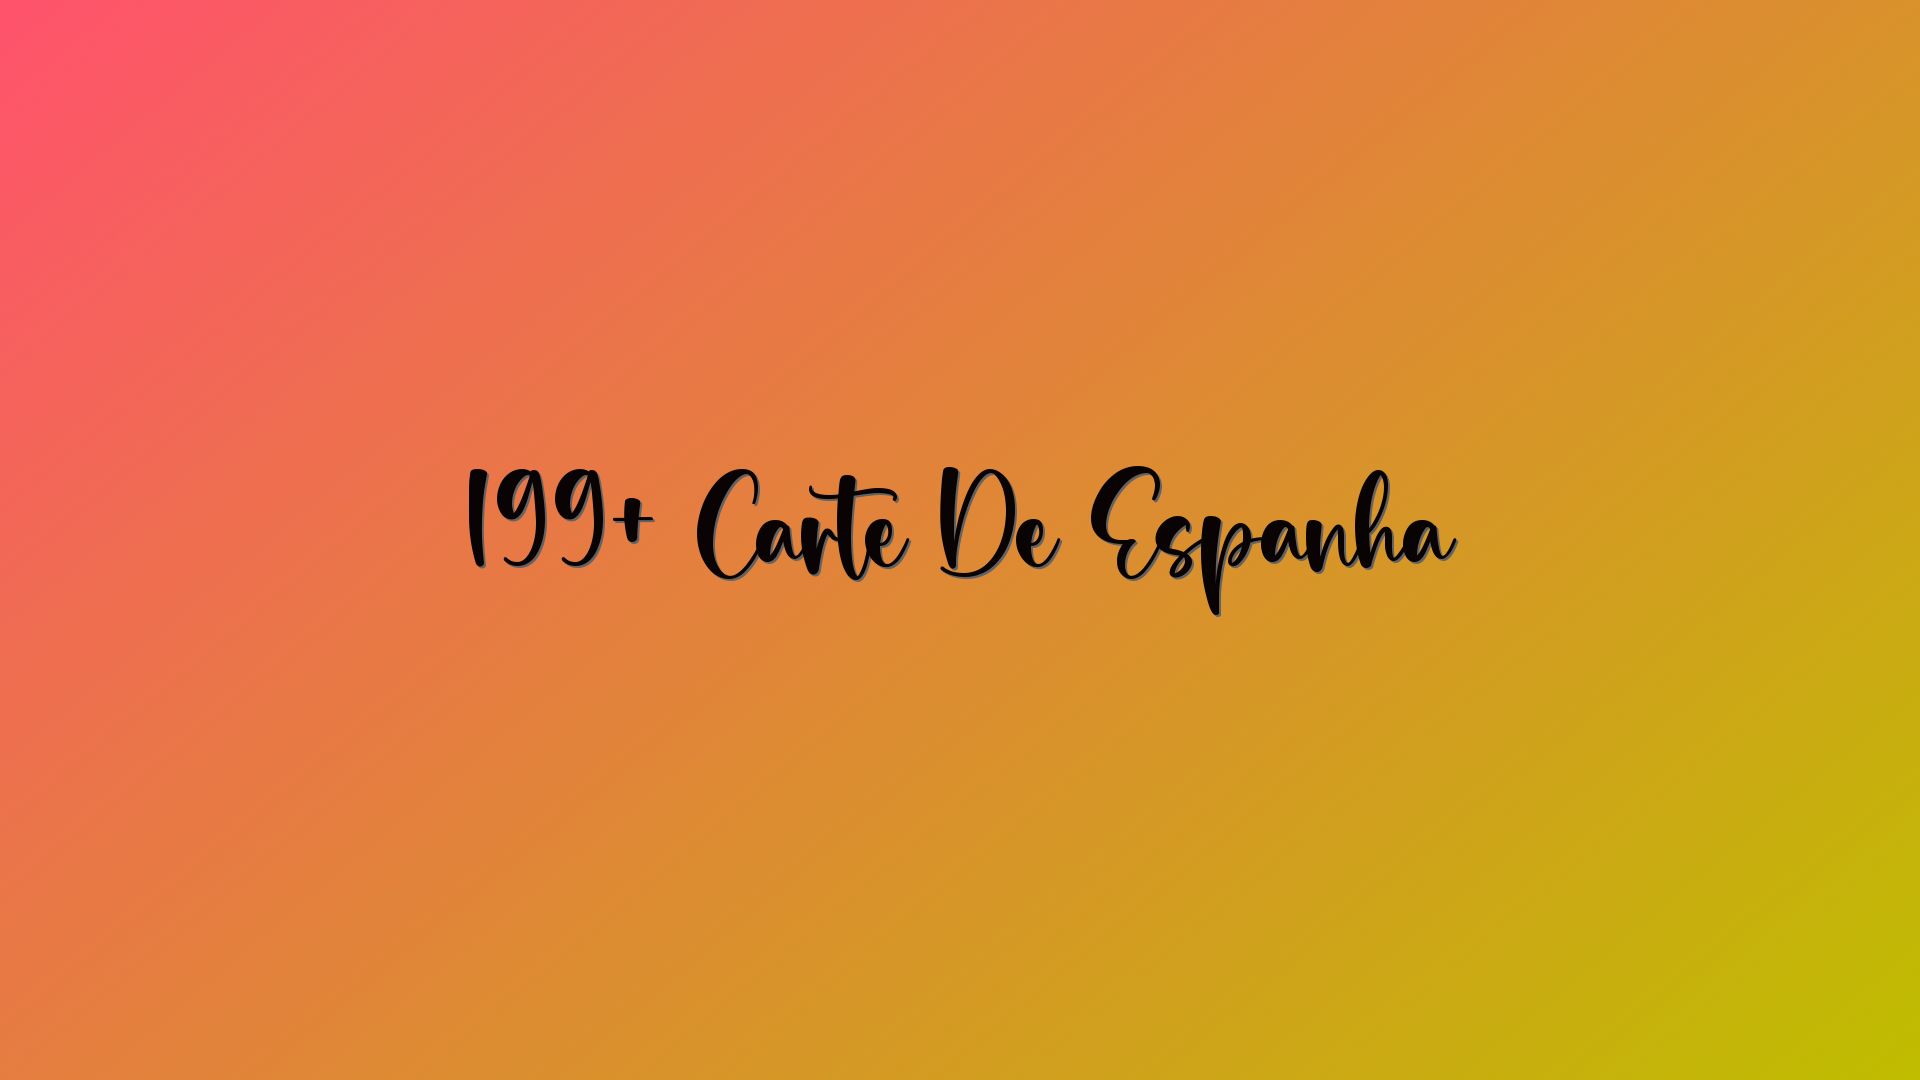 199+ Carte De Espanha